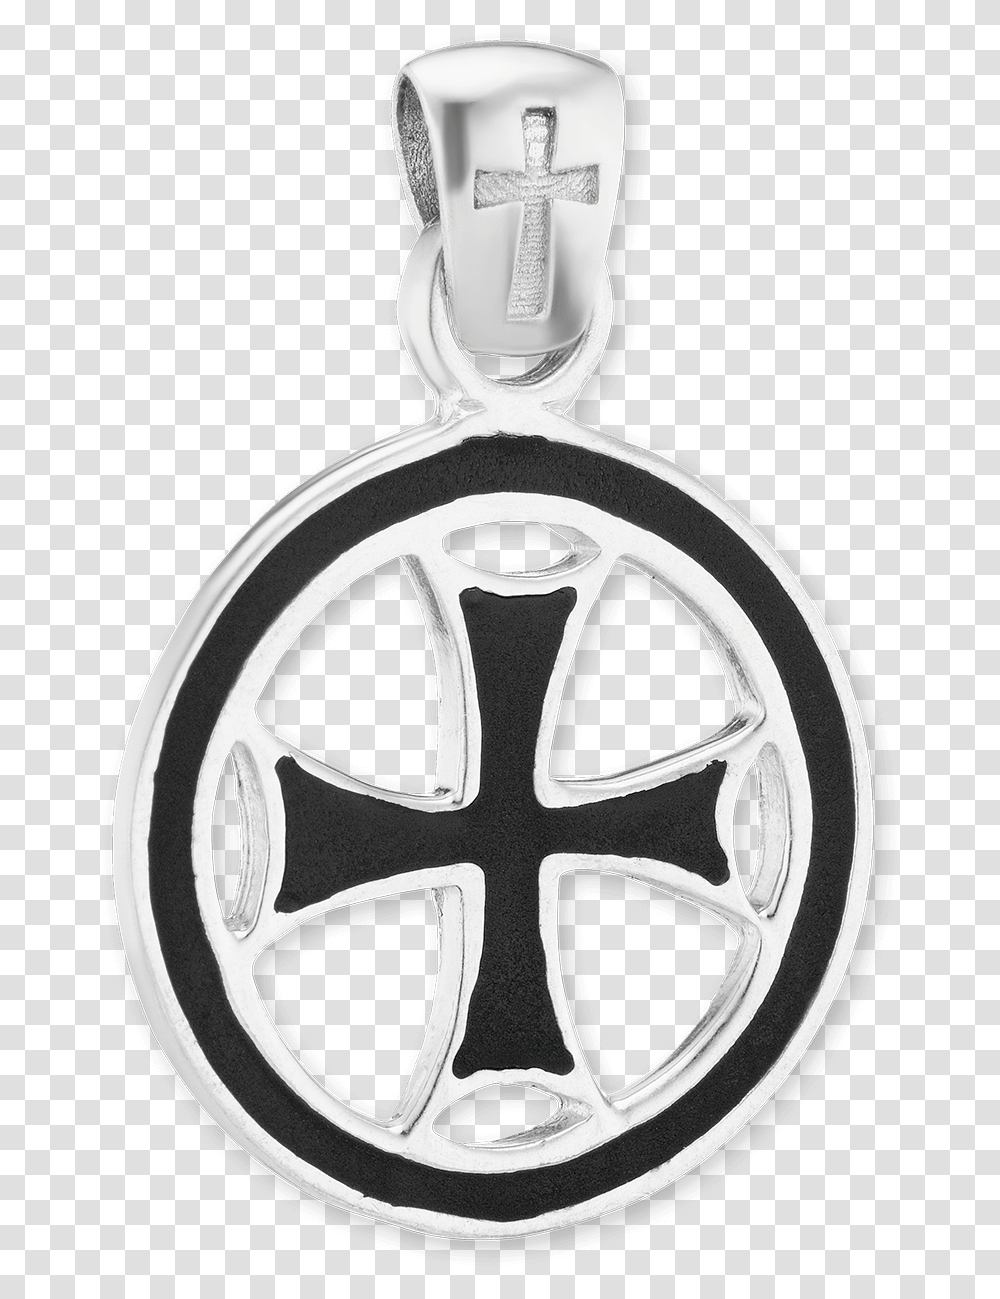 Sterling Silver Maltese Cross Medallion With Black Locket, Logo, Trademark, Emblem Transparent Png